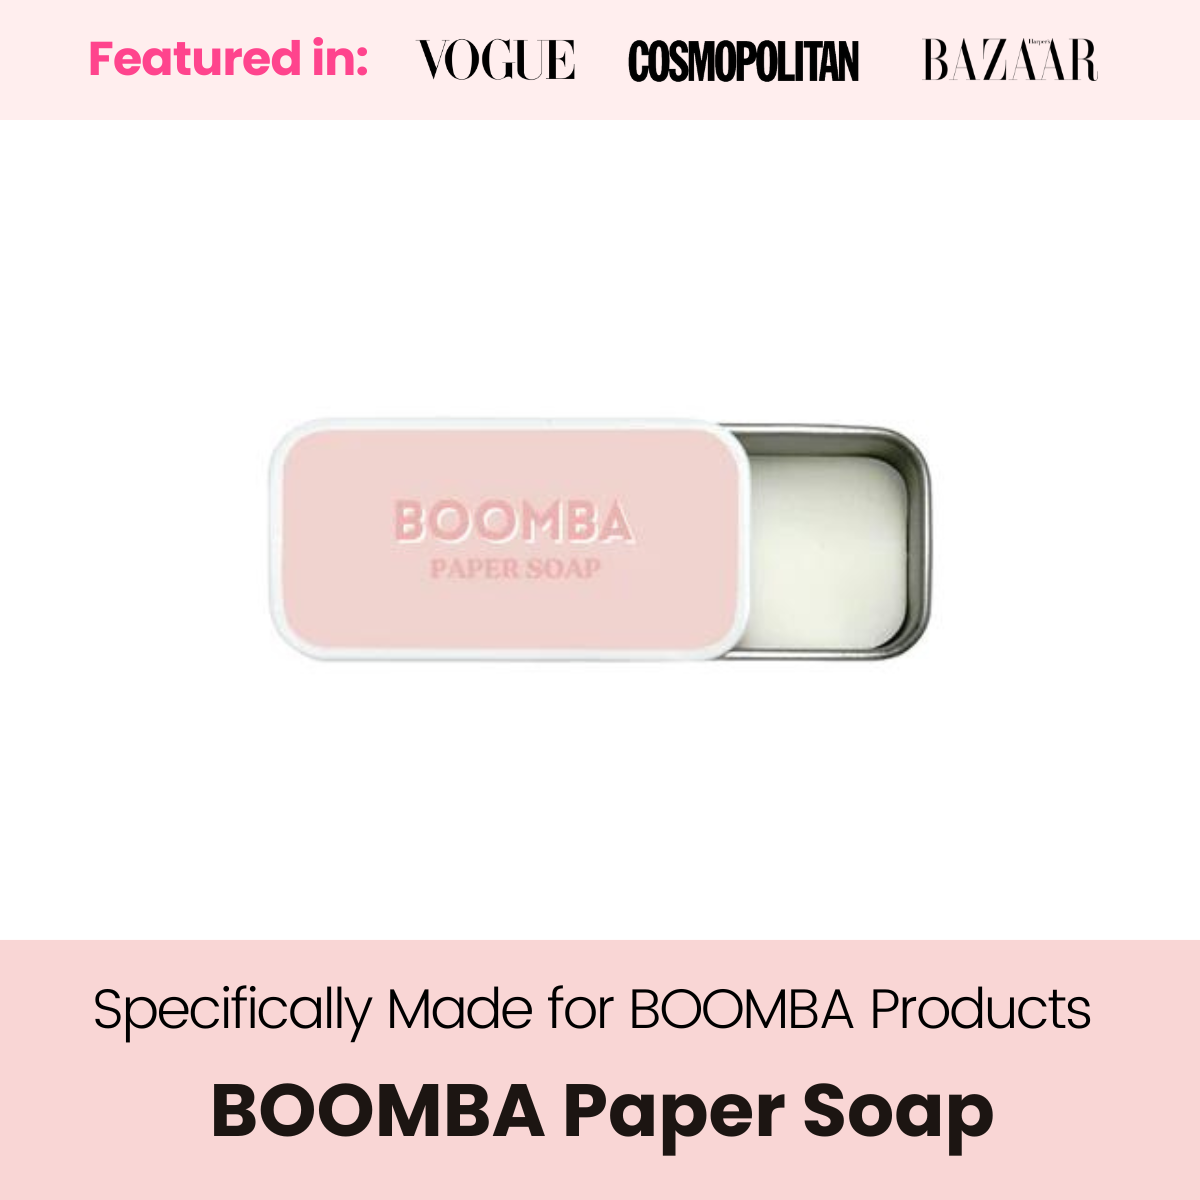 BOOMBA Magic Nipple Covers – BOOMBA SG